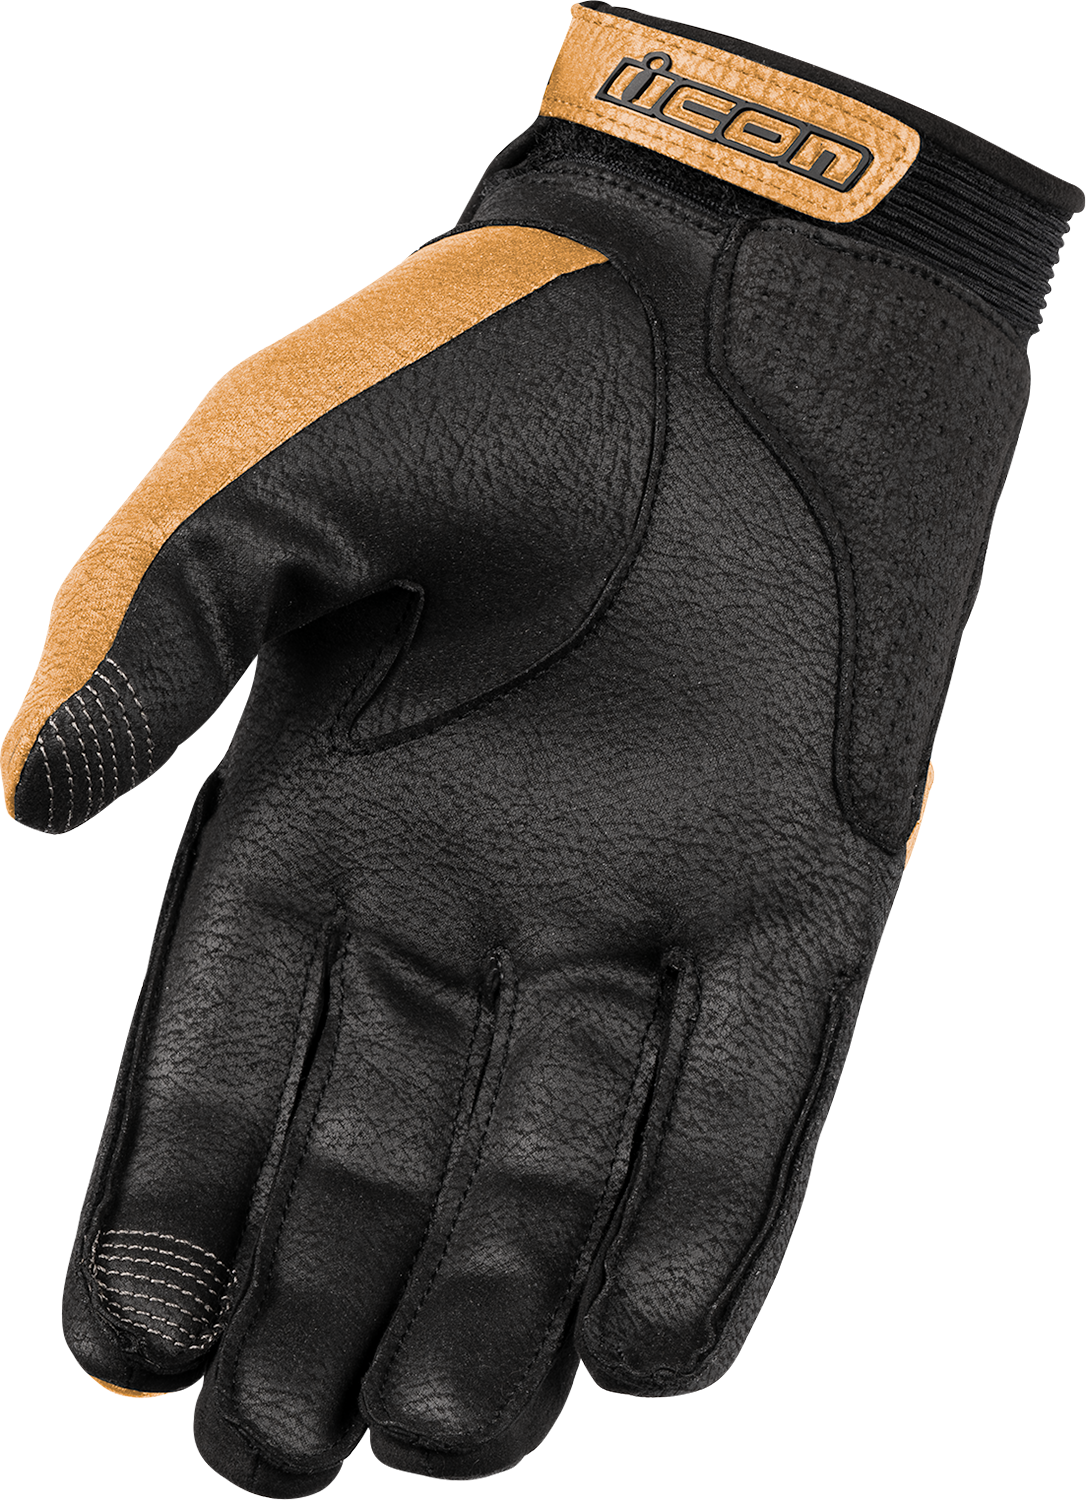 ICON Women's Superduty3™ CE Gloves - Tan - XS 3302-0924